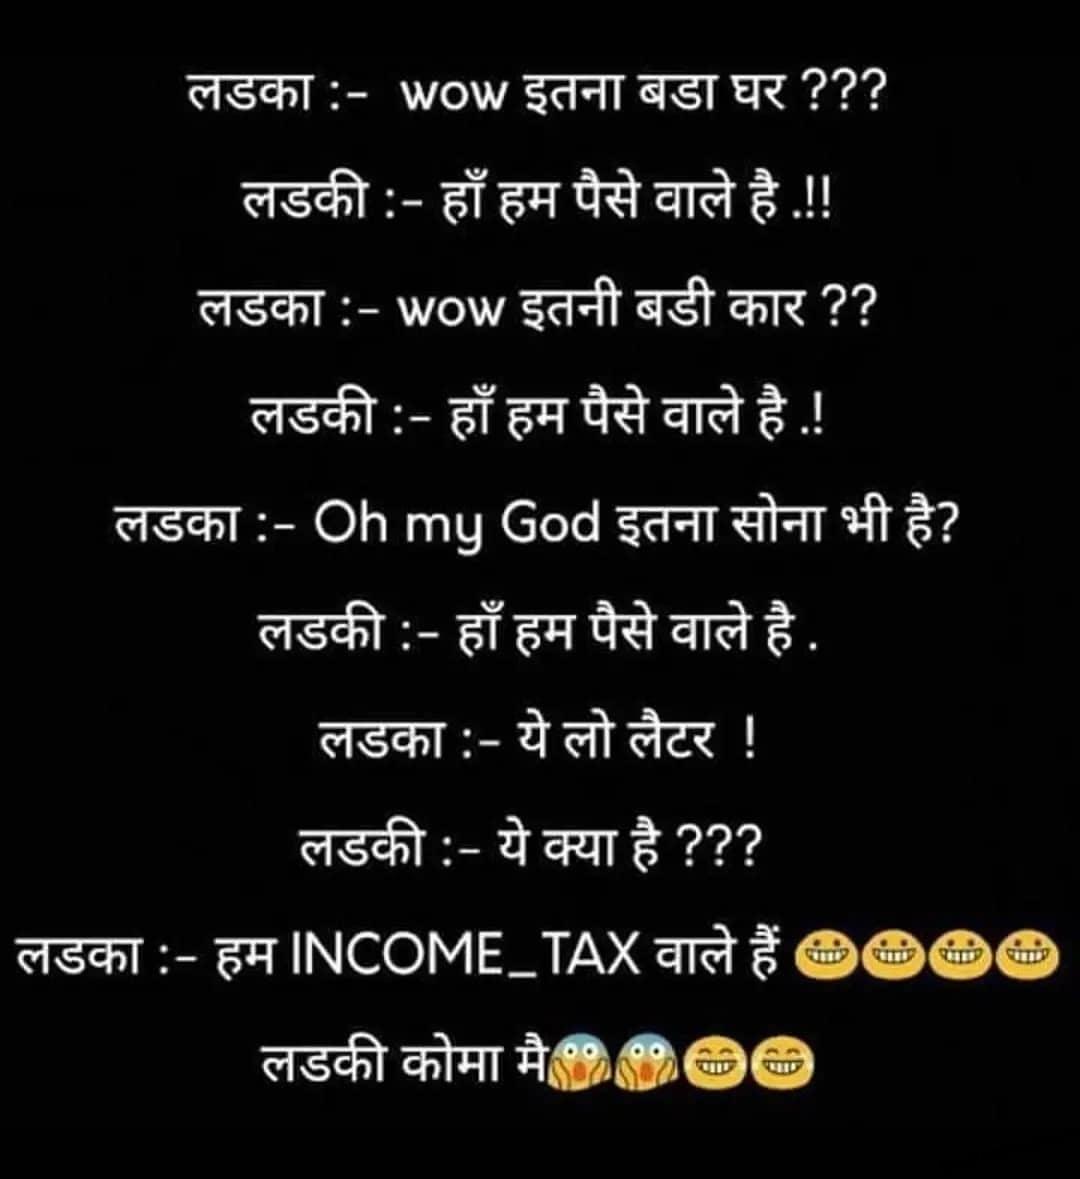 Hindi Funny Jokes Girls - Funny Jokes in Hindi for Girls